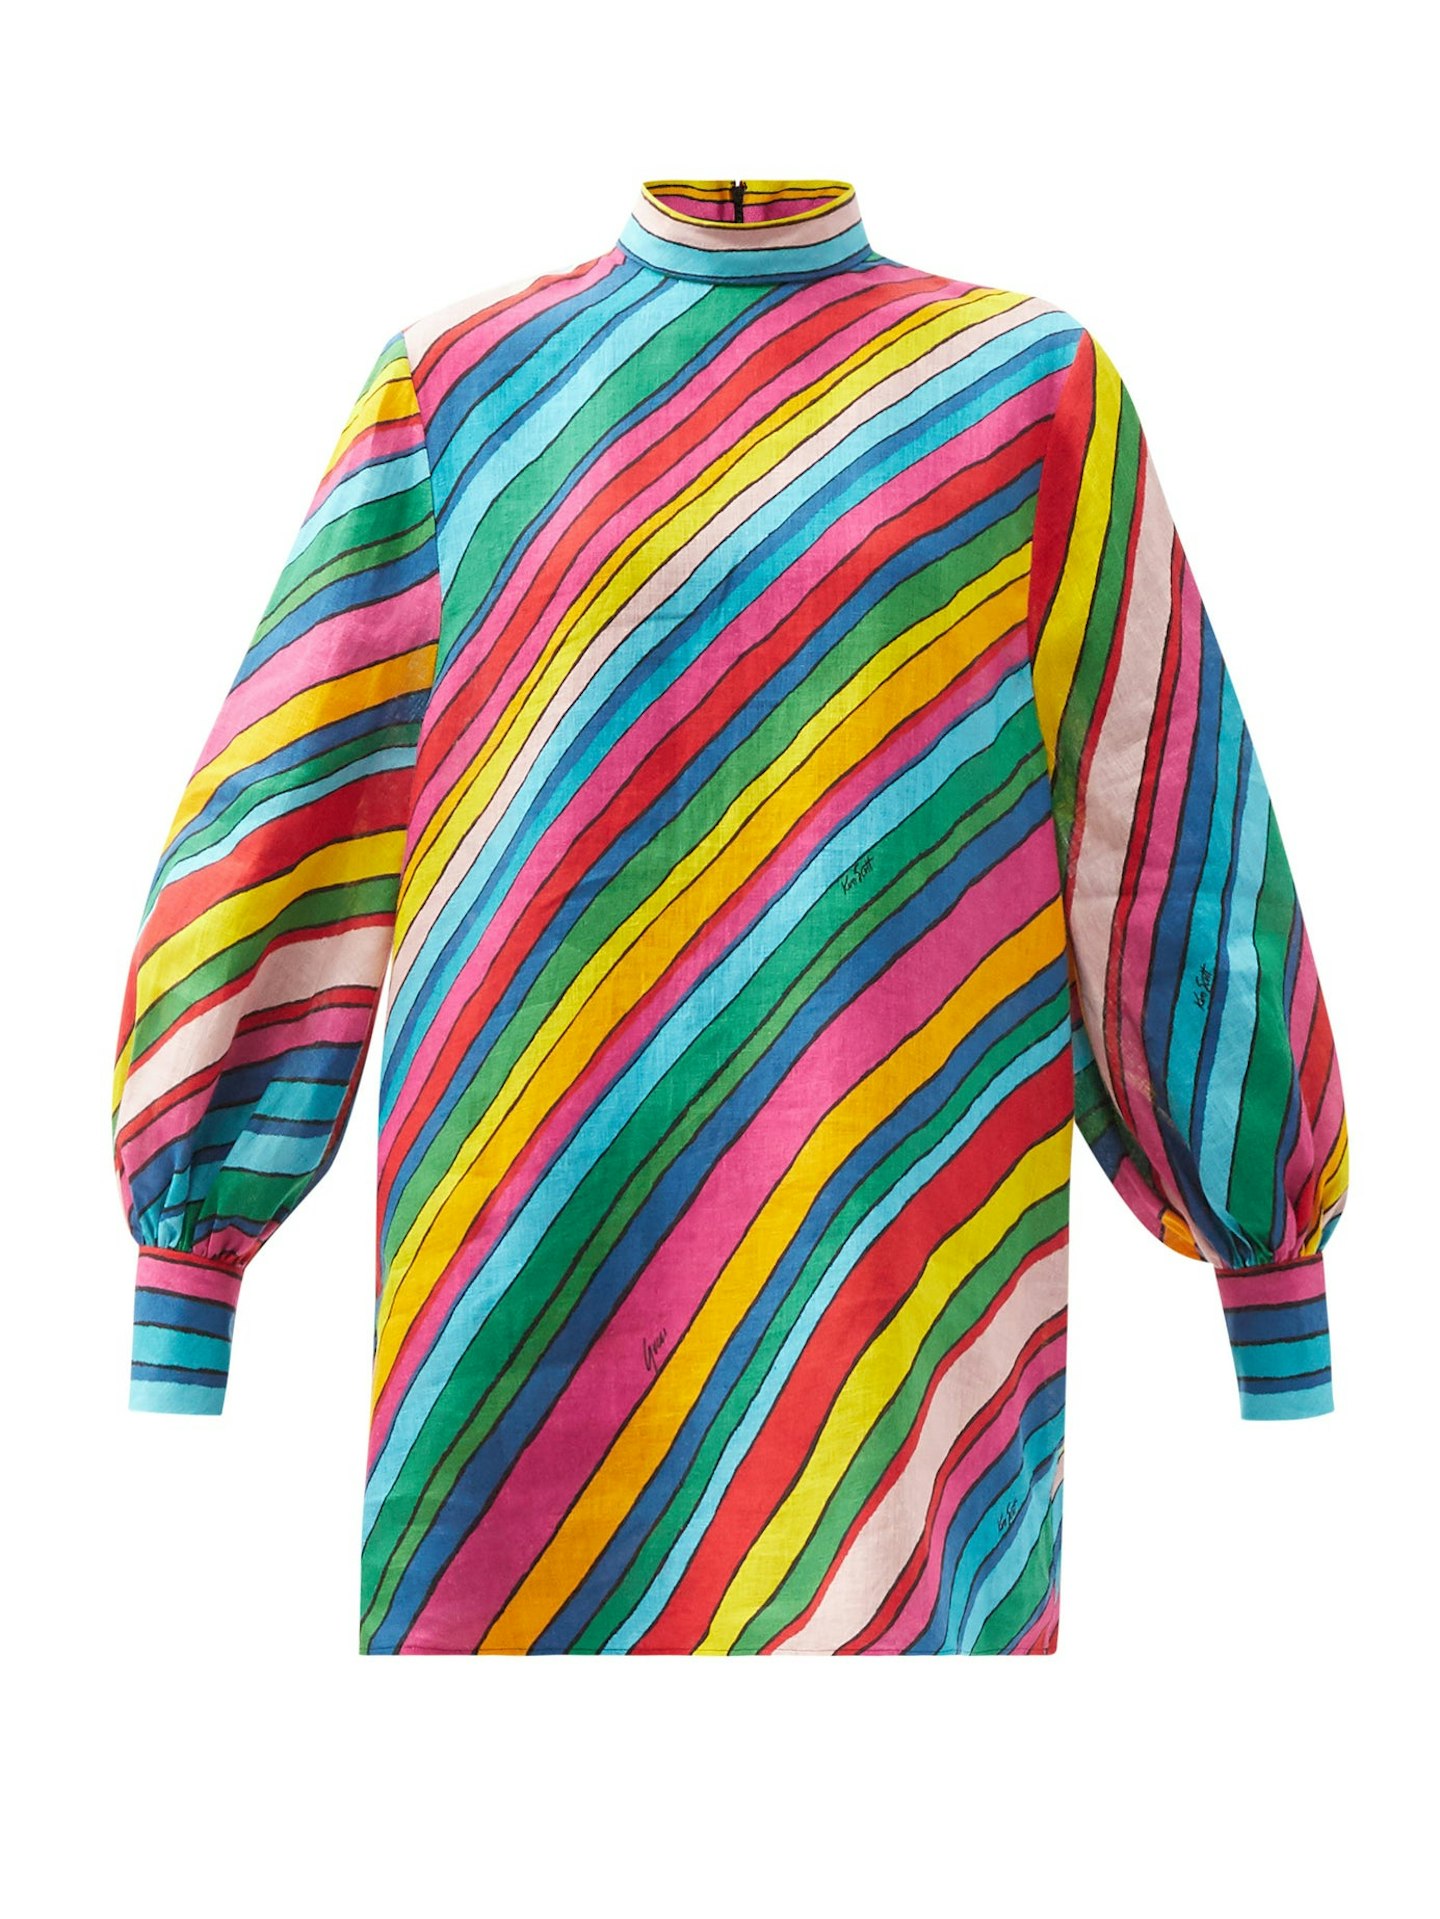 Gucci, Rainbow Print Linen Top, £850